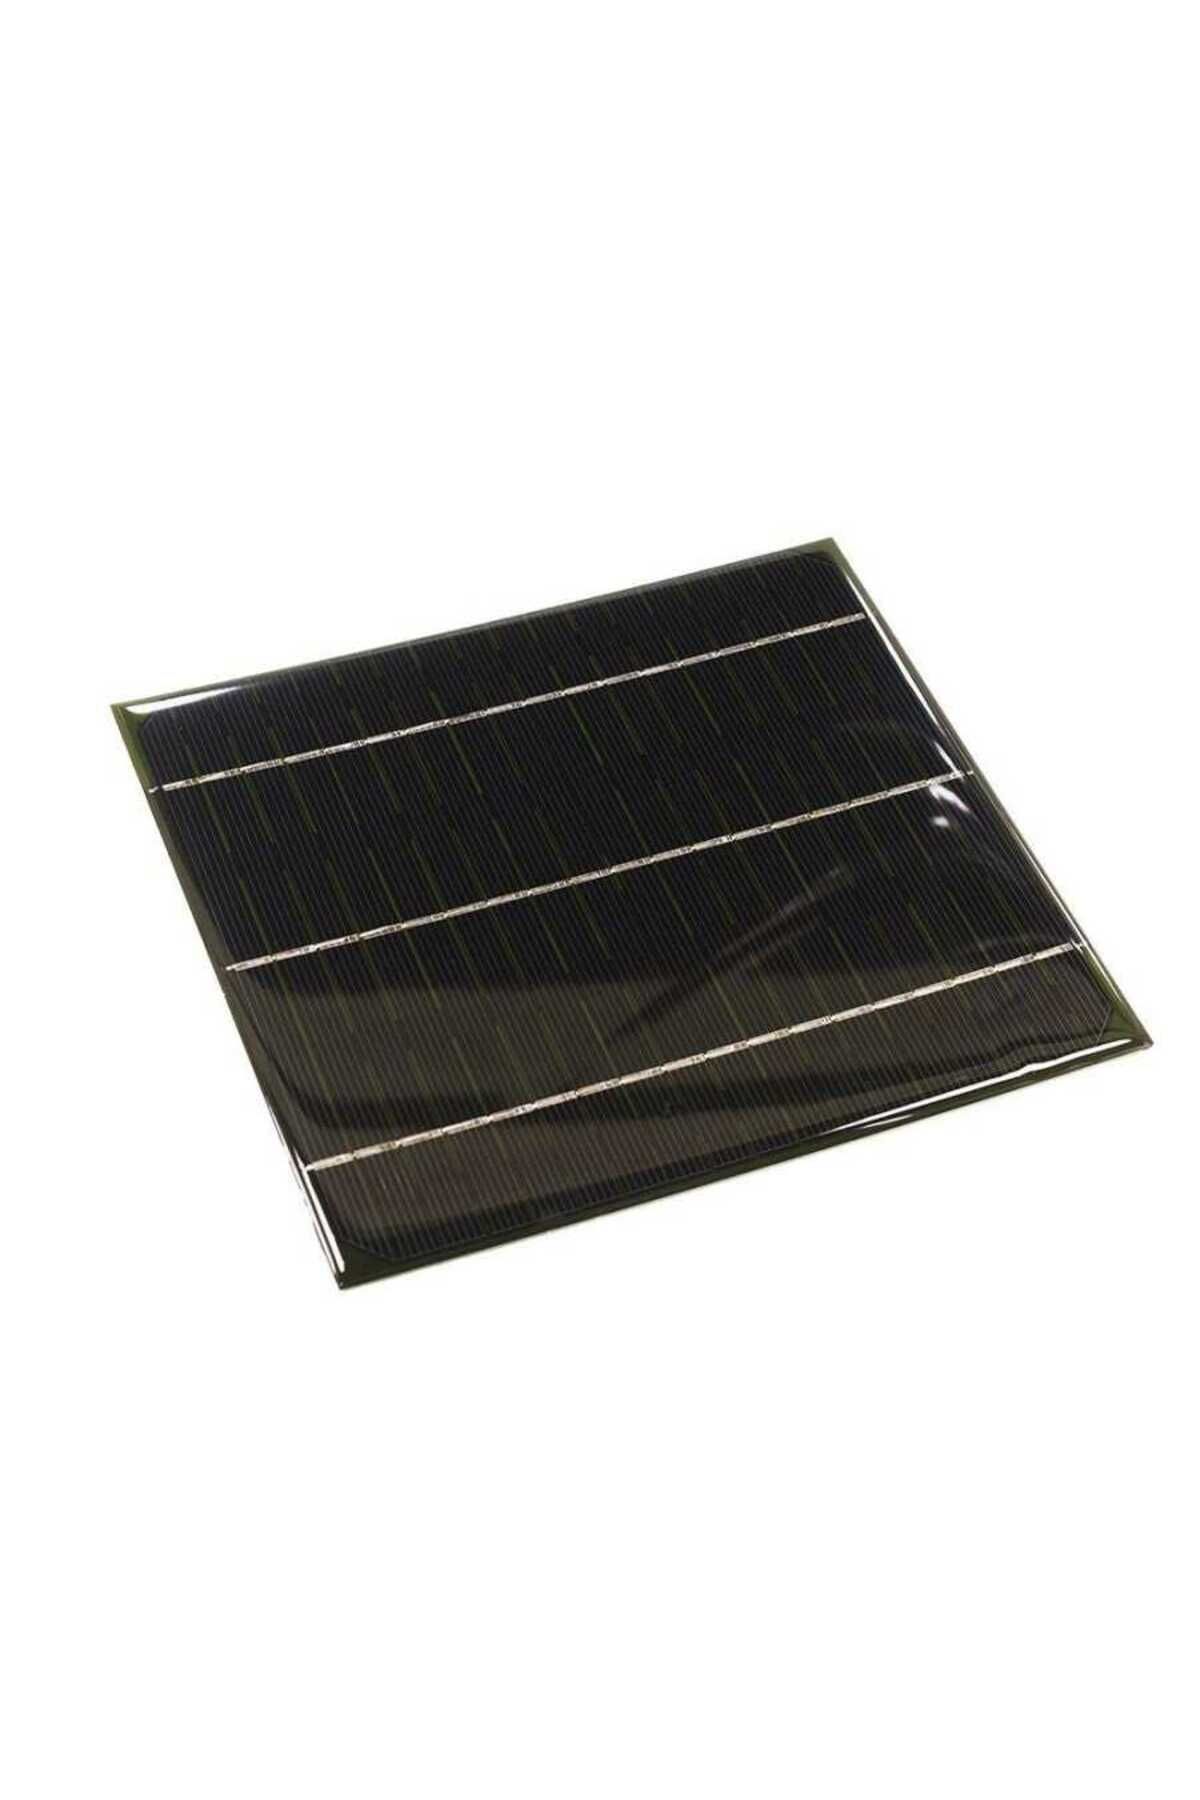 Profuse 9V 500mA Solar Panel - Güneş Pili